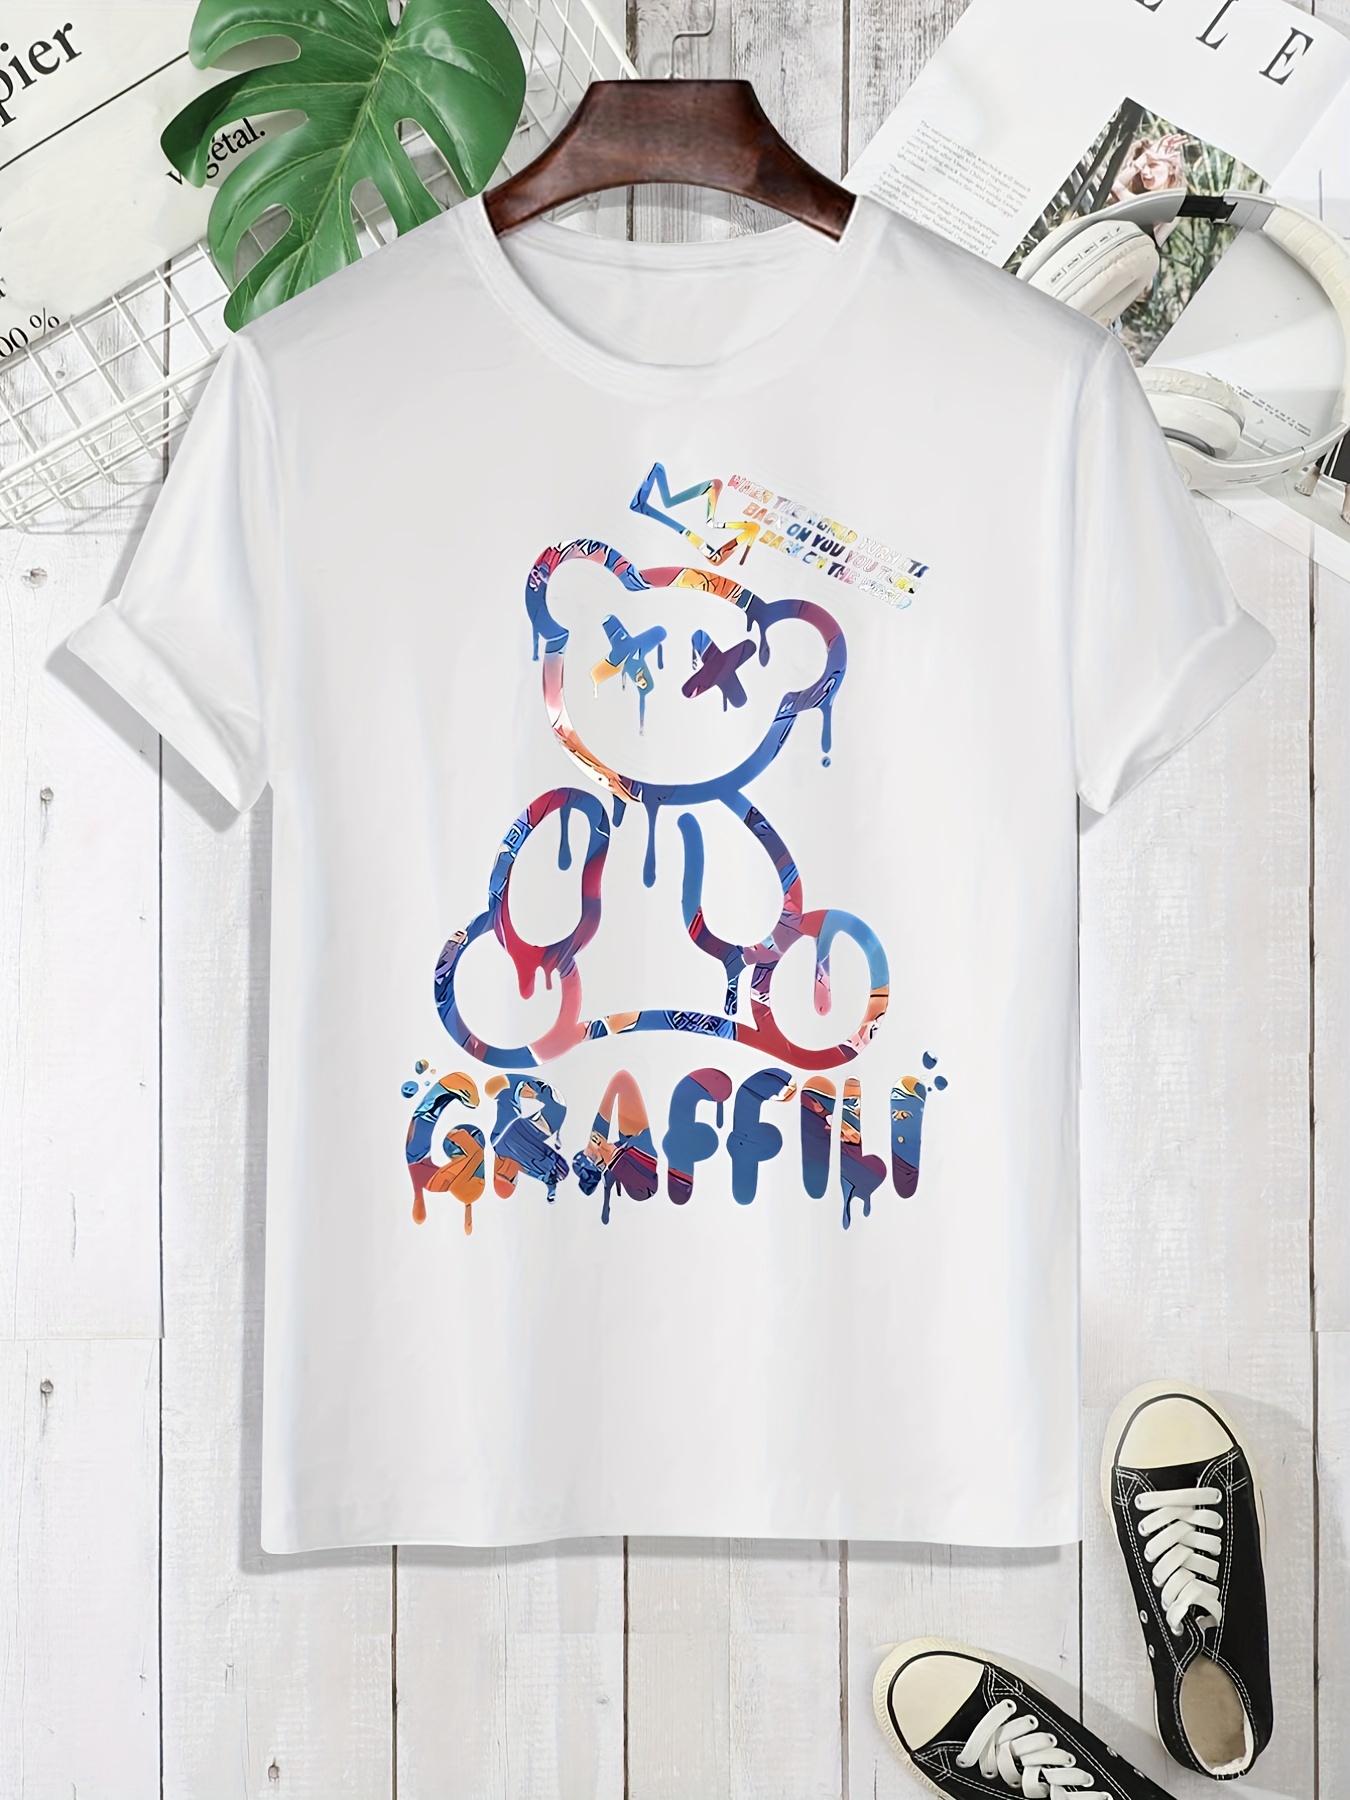 Cute Graffiti Bear Graphic Print Men's Creative Top, Casual Short